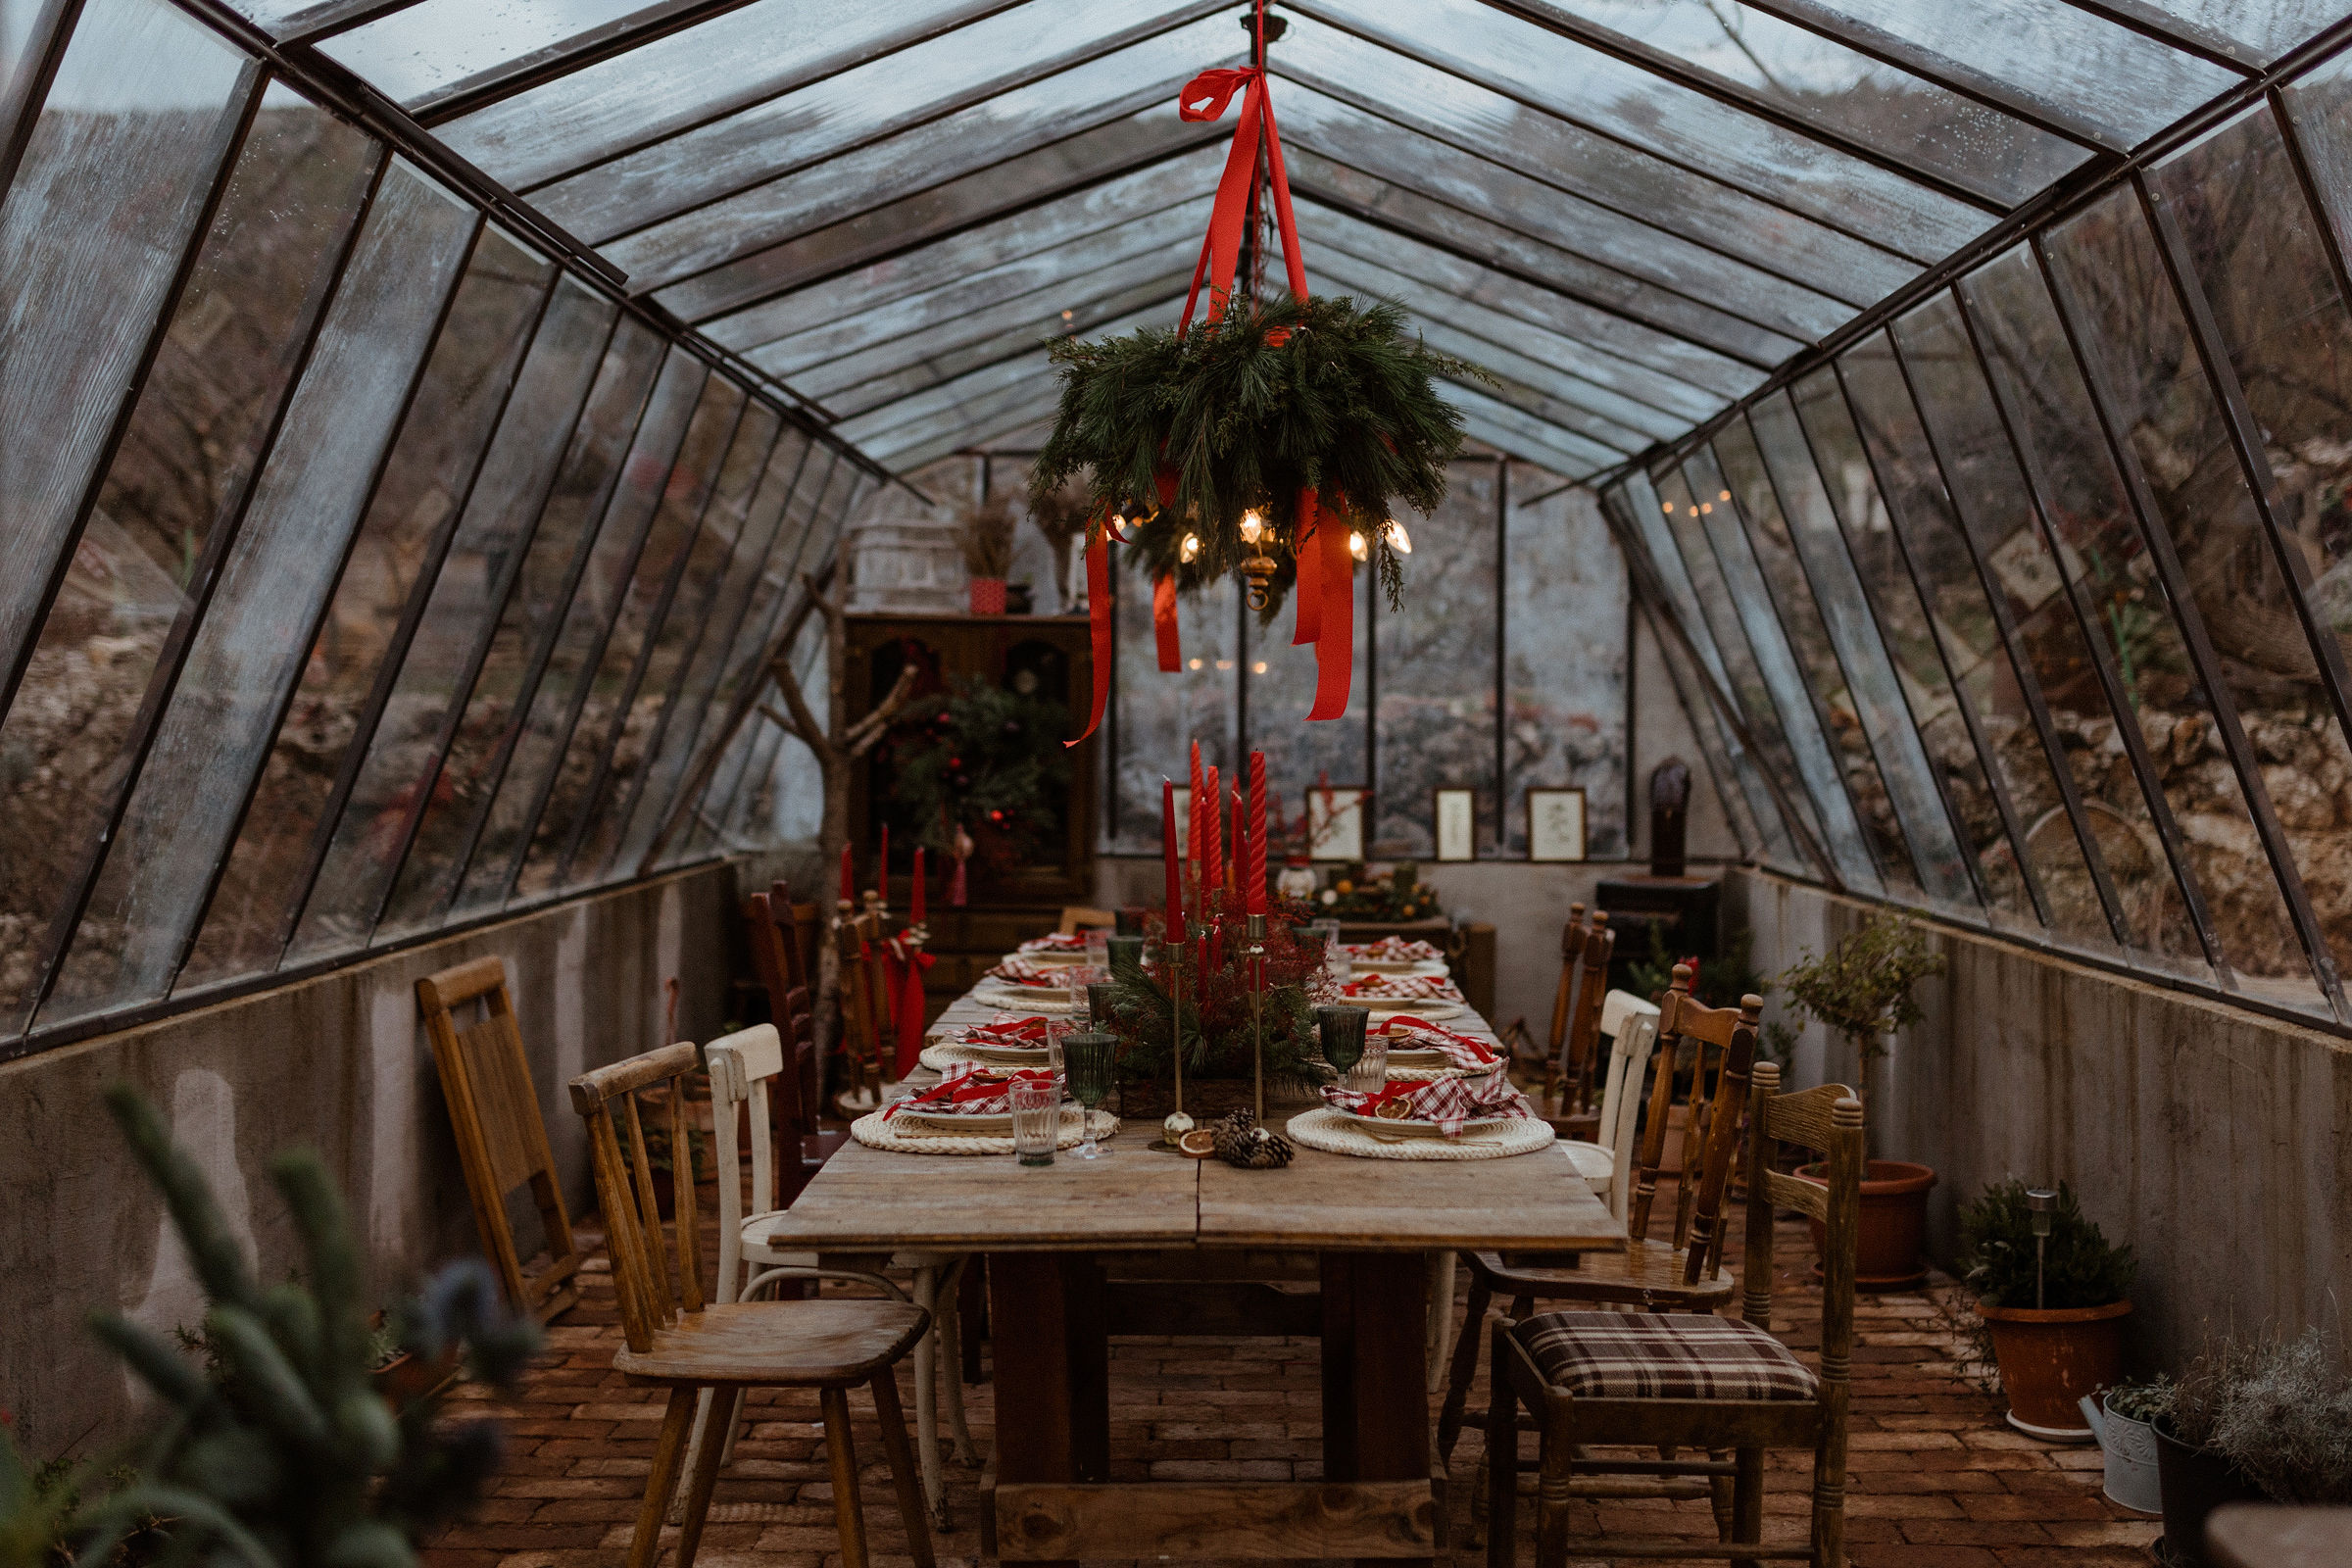 Kako ovoga Božića postići zaista magičnu atmosferu? 4 prijedloga za najljepši blagdanski stol